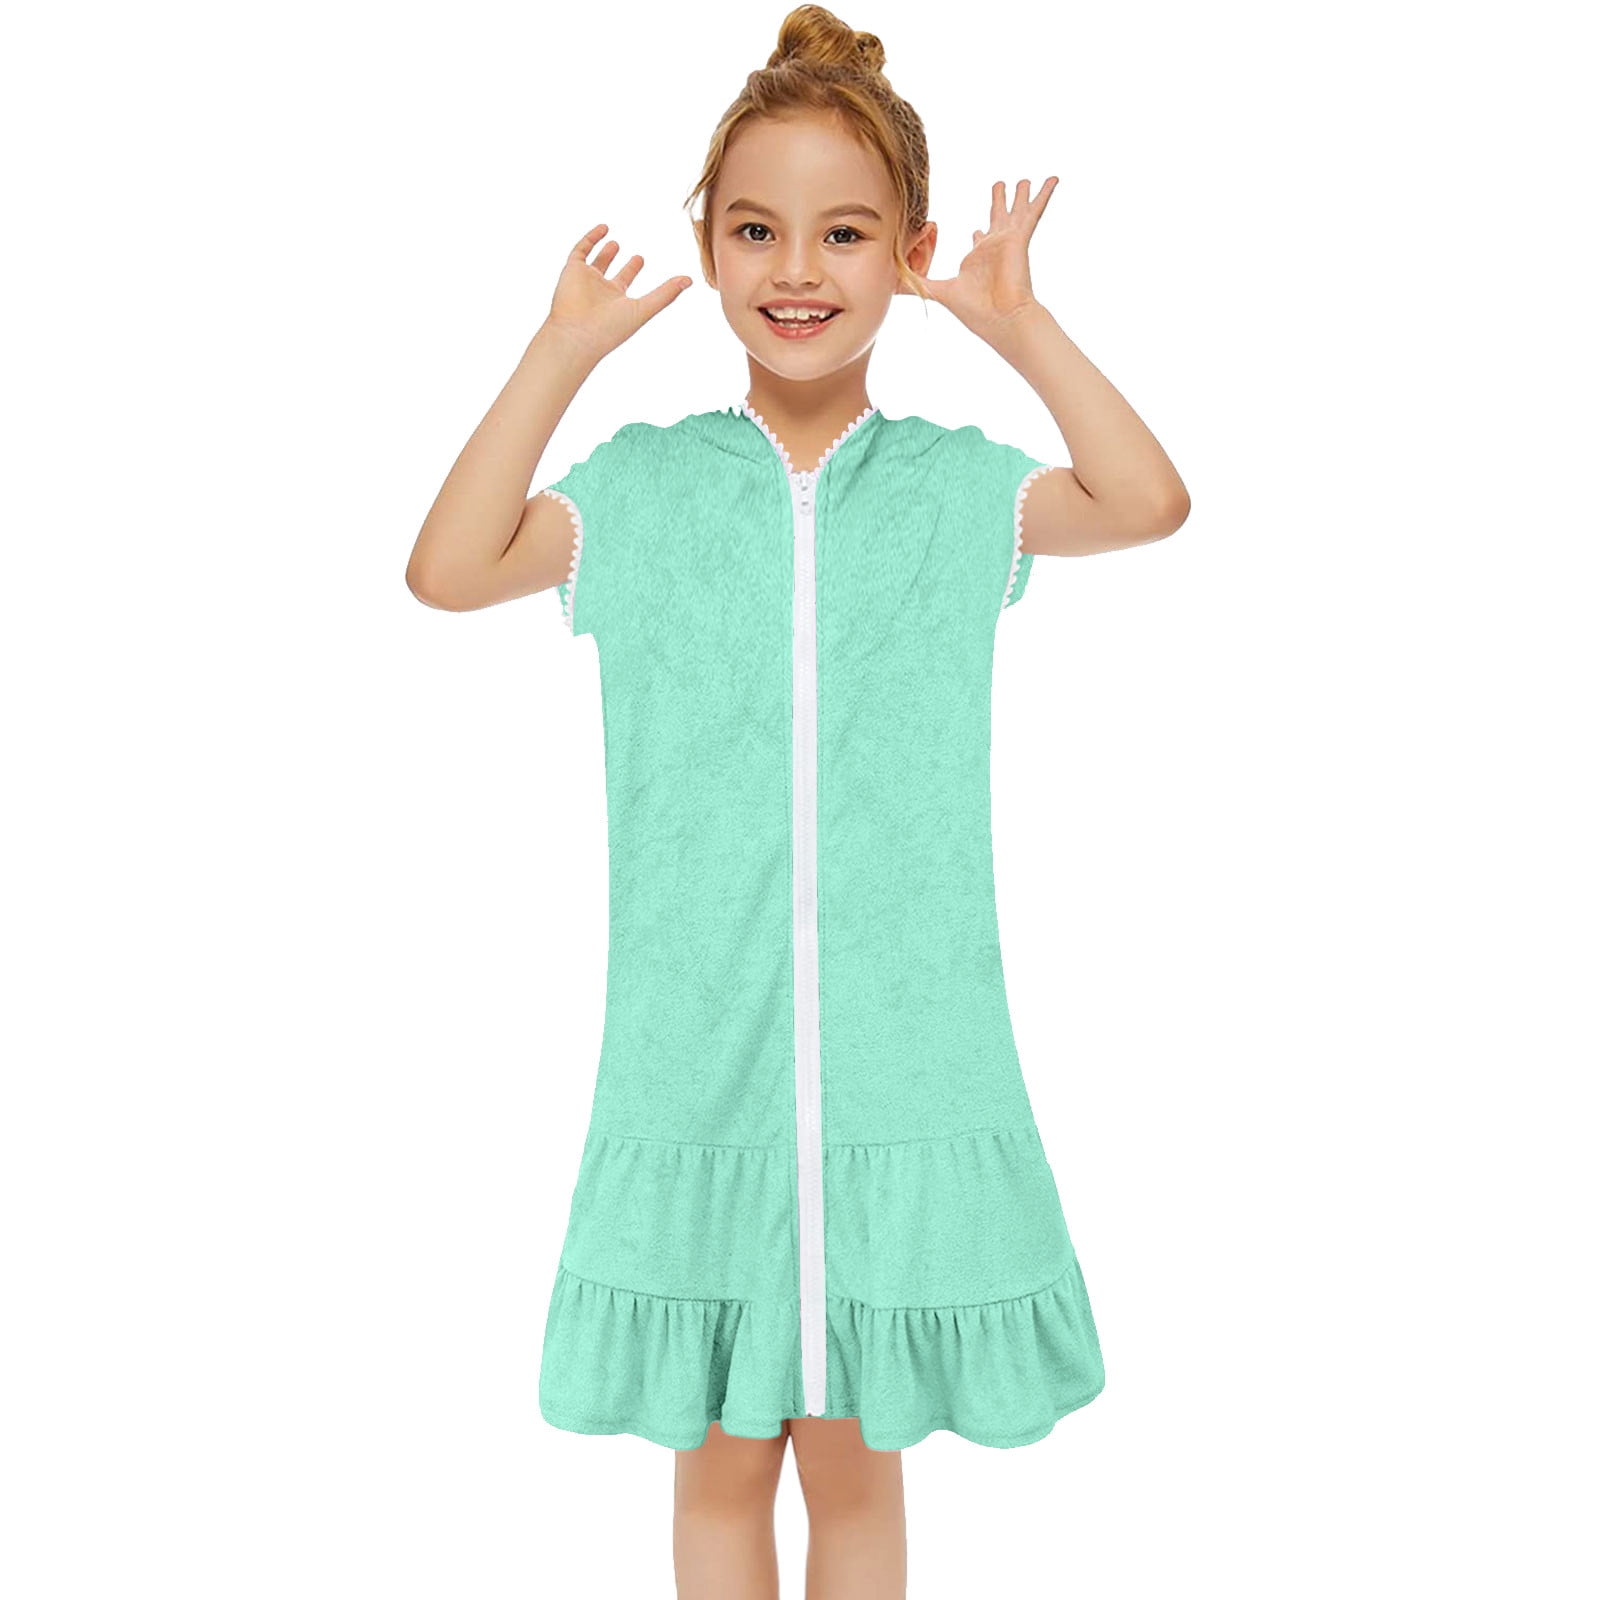 ZHAGHMIN Hawaiian Dresses for Girls Kids Toddler Girls Short